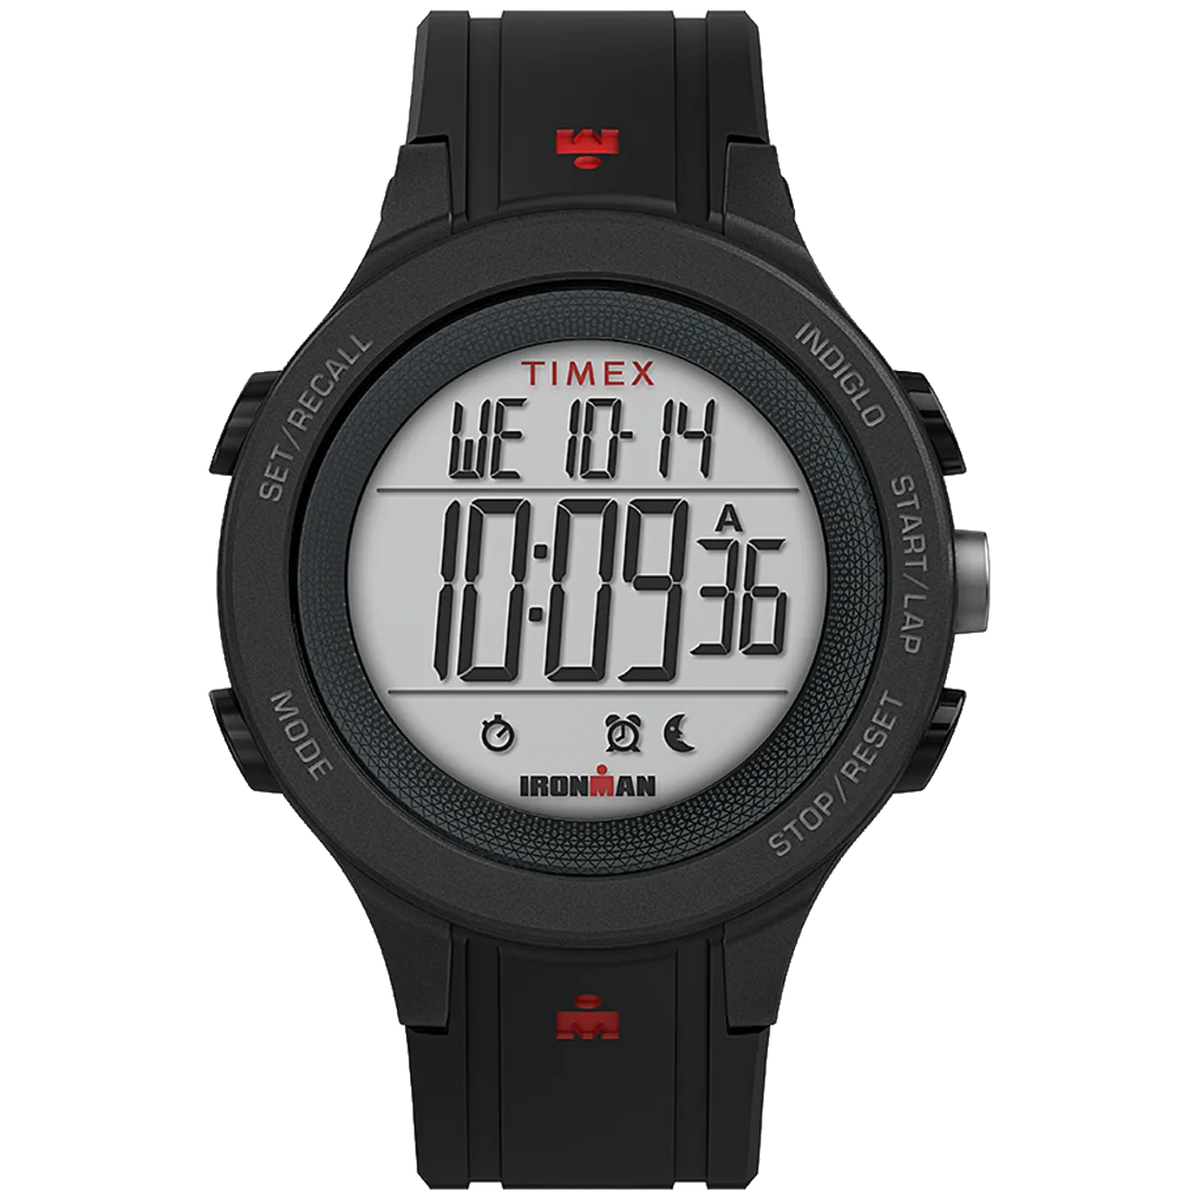 Timex - Ironman T200 - Black